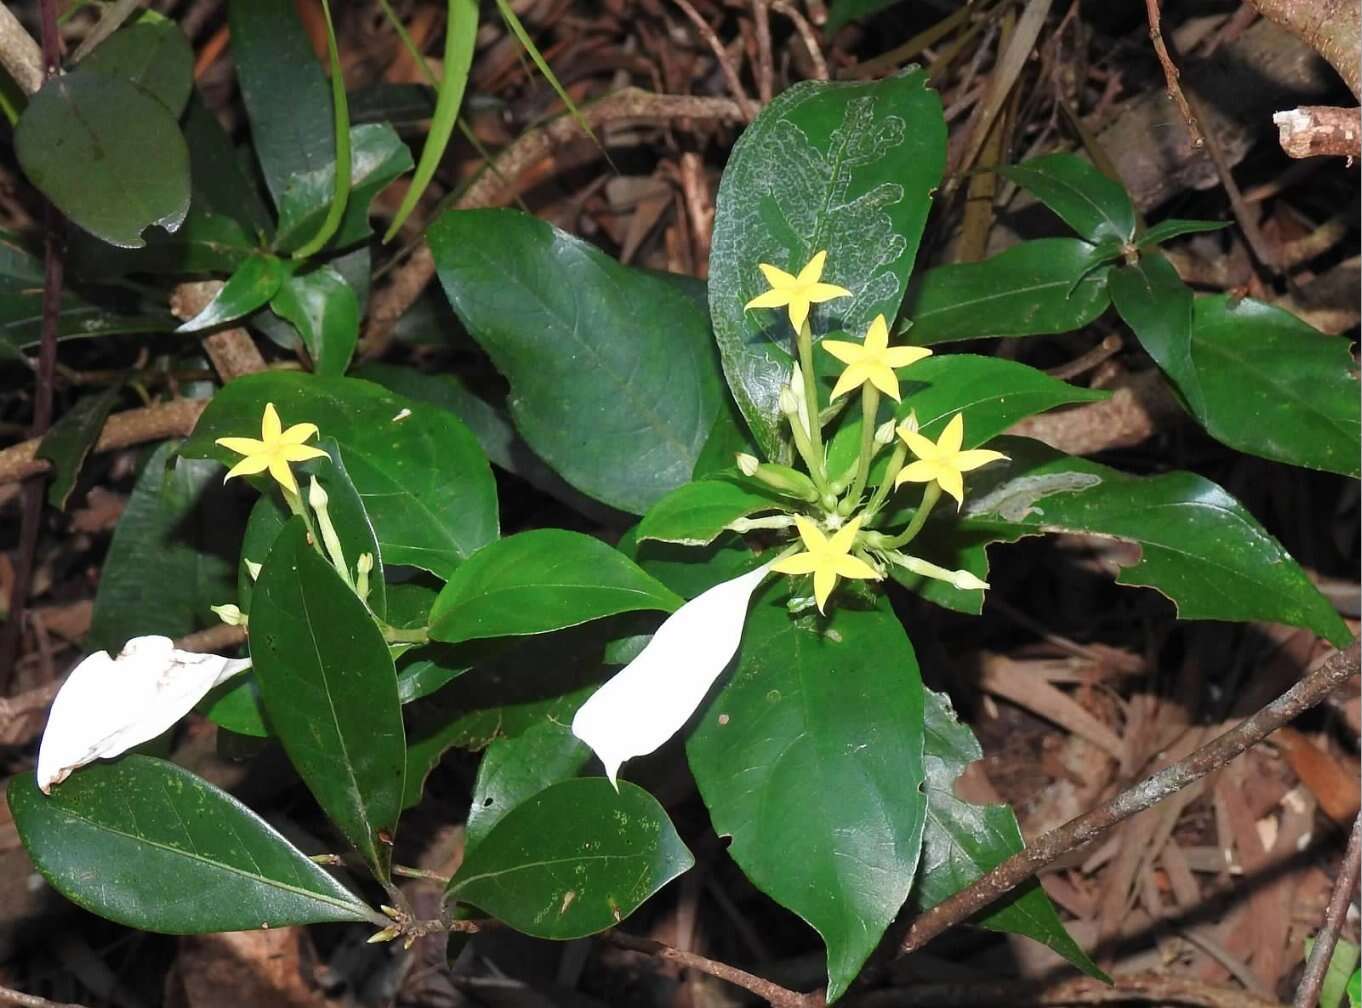 Image of Mussaenda pubescens Dryand.